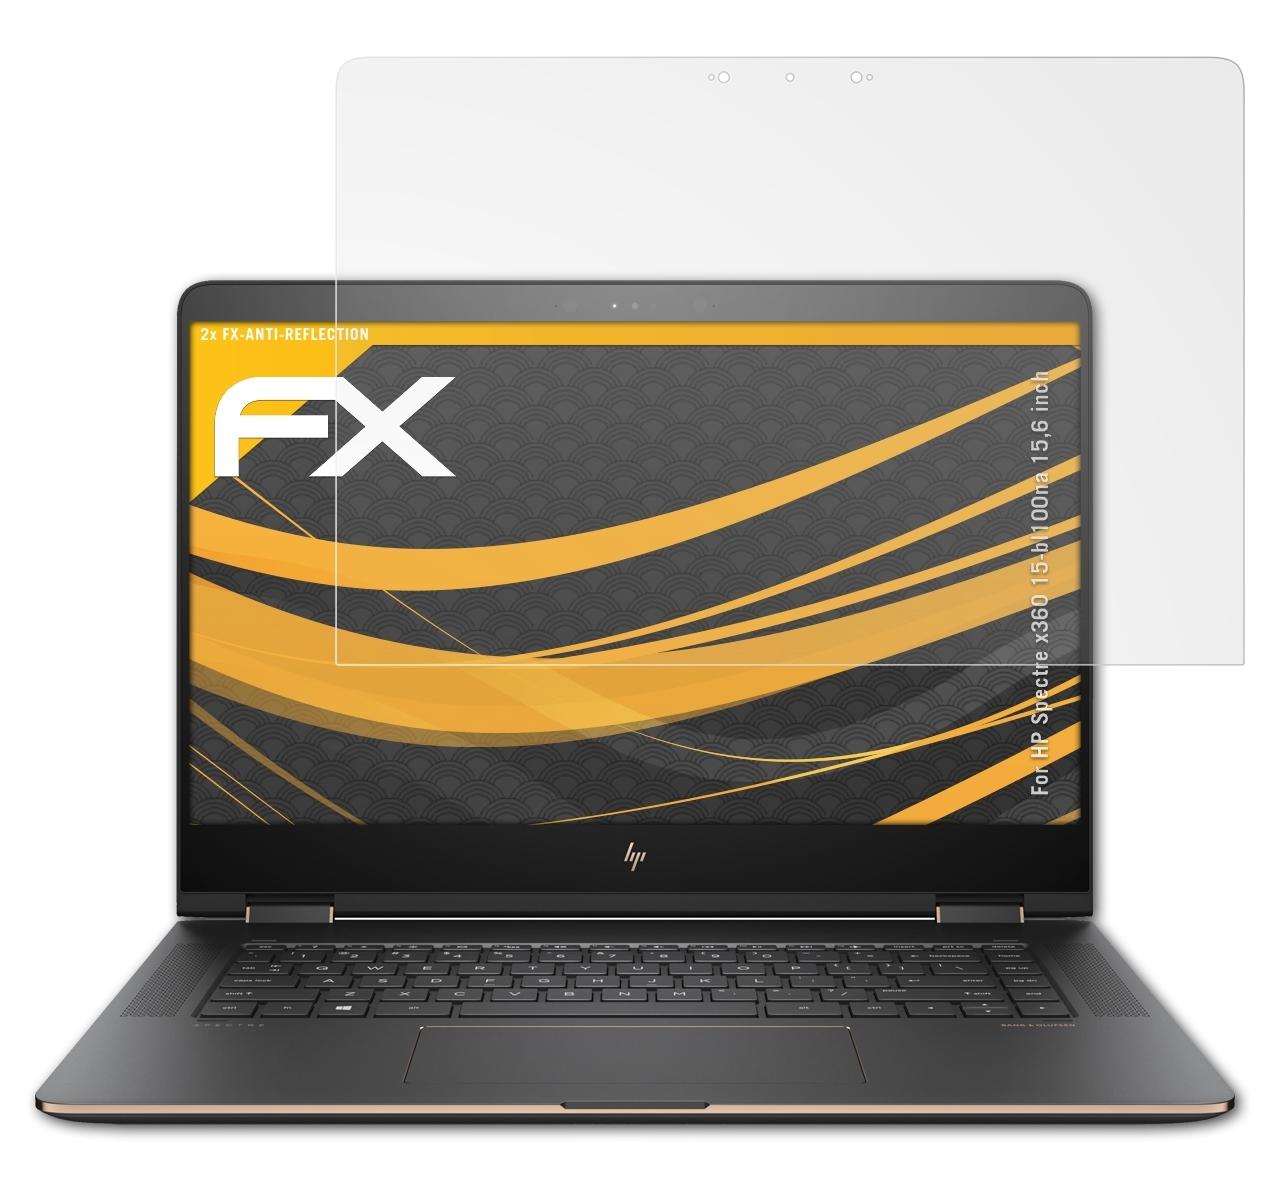 ATFOLIX 2x FX-Antireflex Displayschutz(für HP x360 inch)) 15-bl100na Spectre (15,6